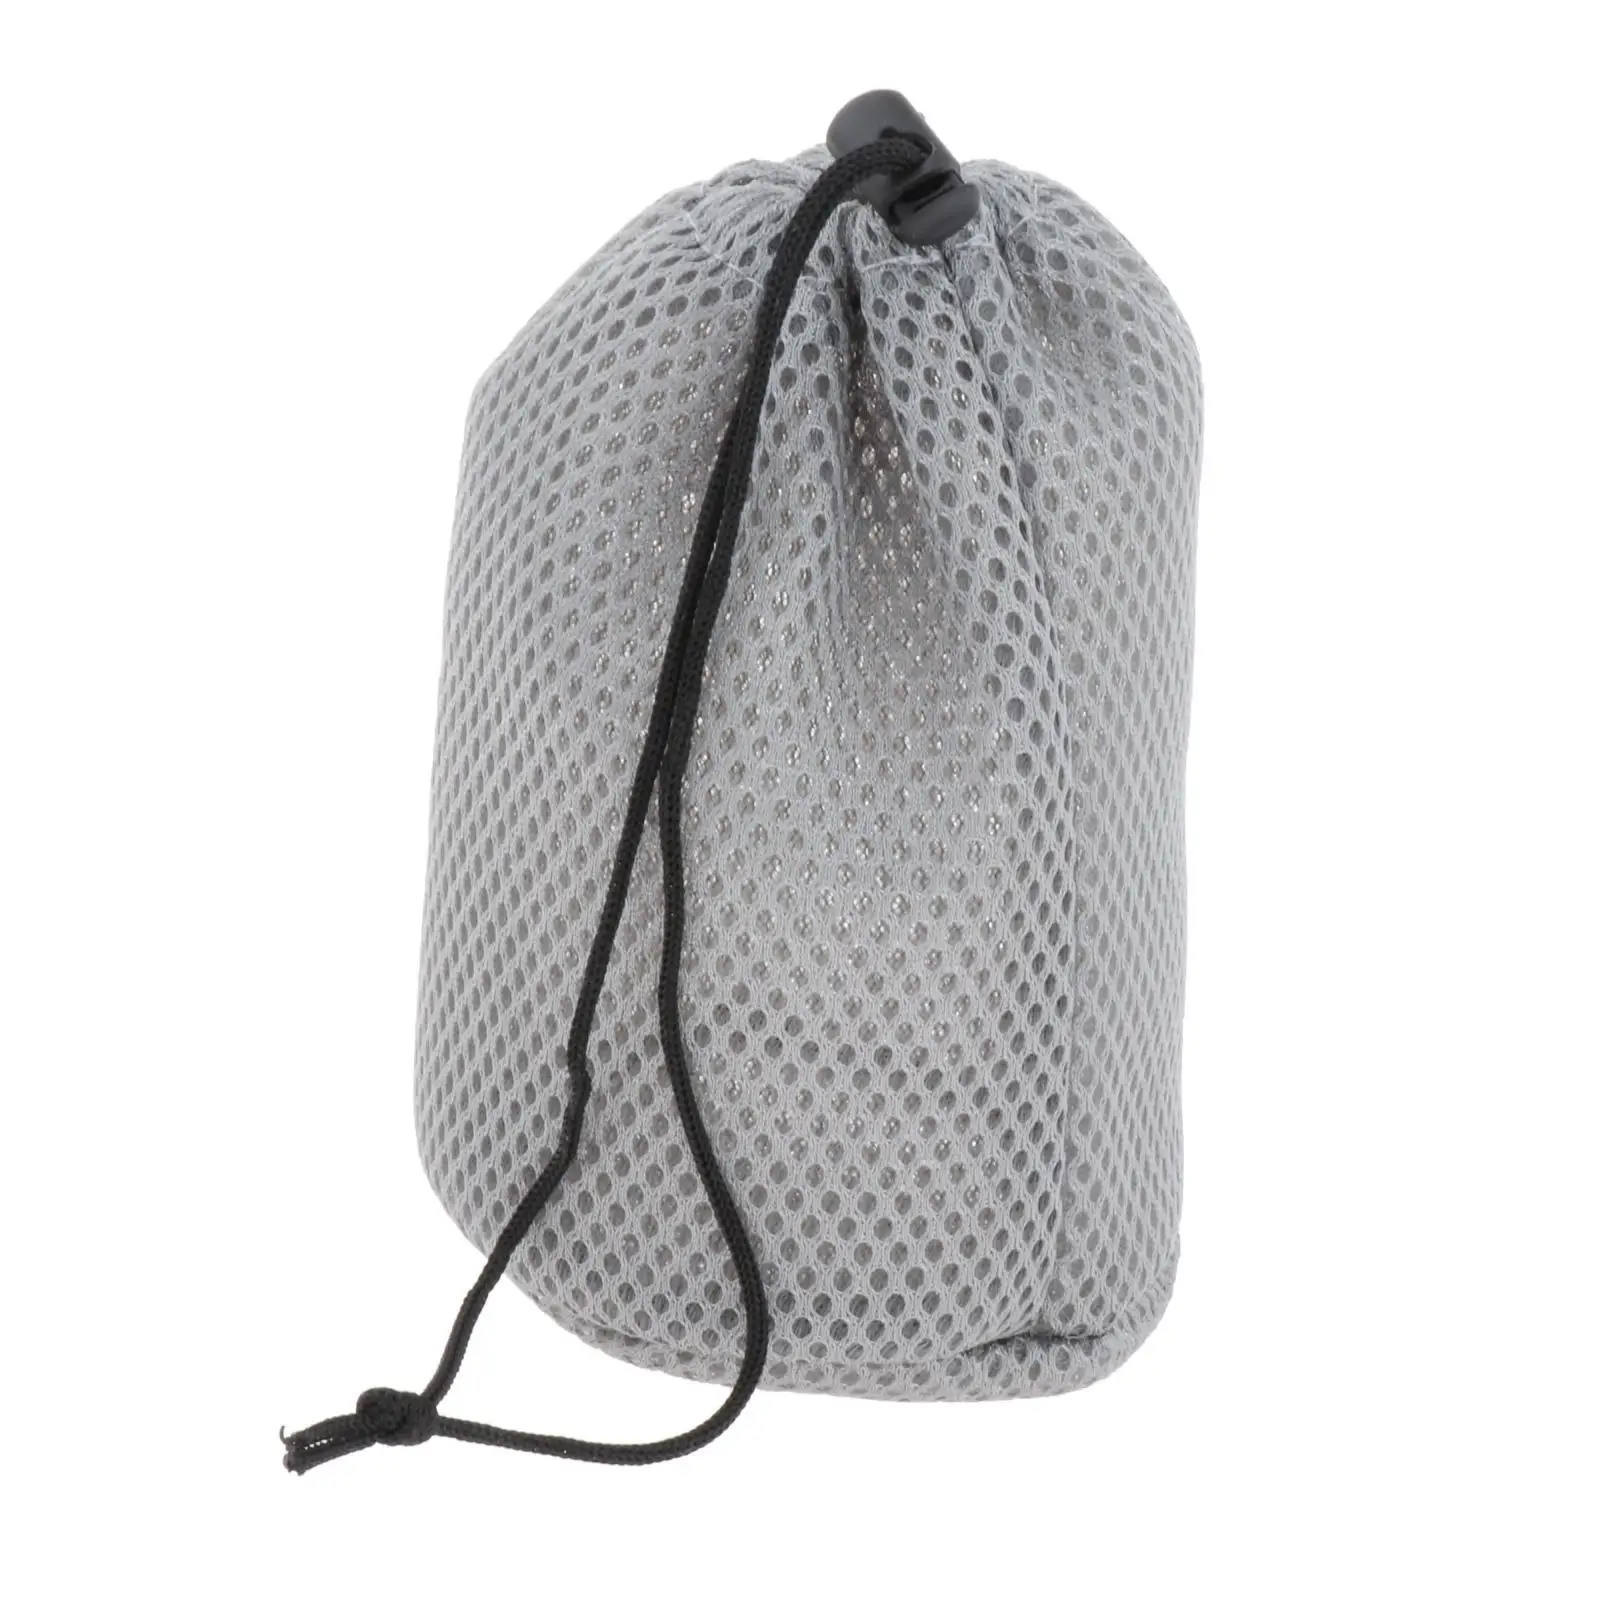 Portable Mesh Drawstring Bag Stuff Storage Sack Pouch  Pot Pan Carrier